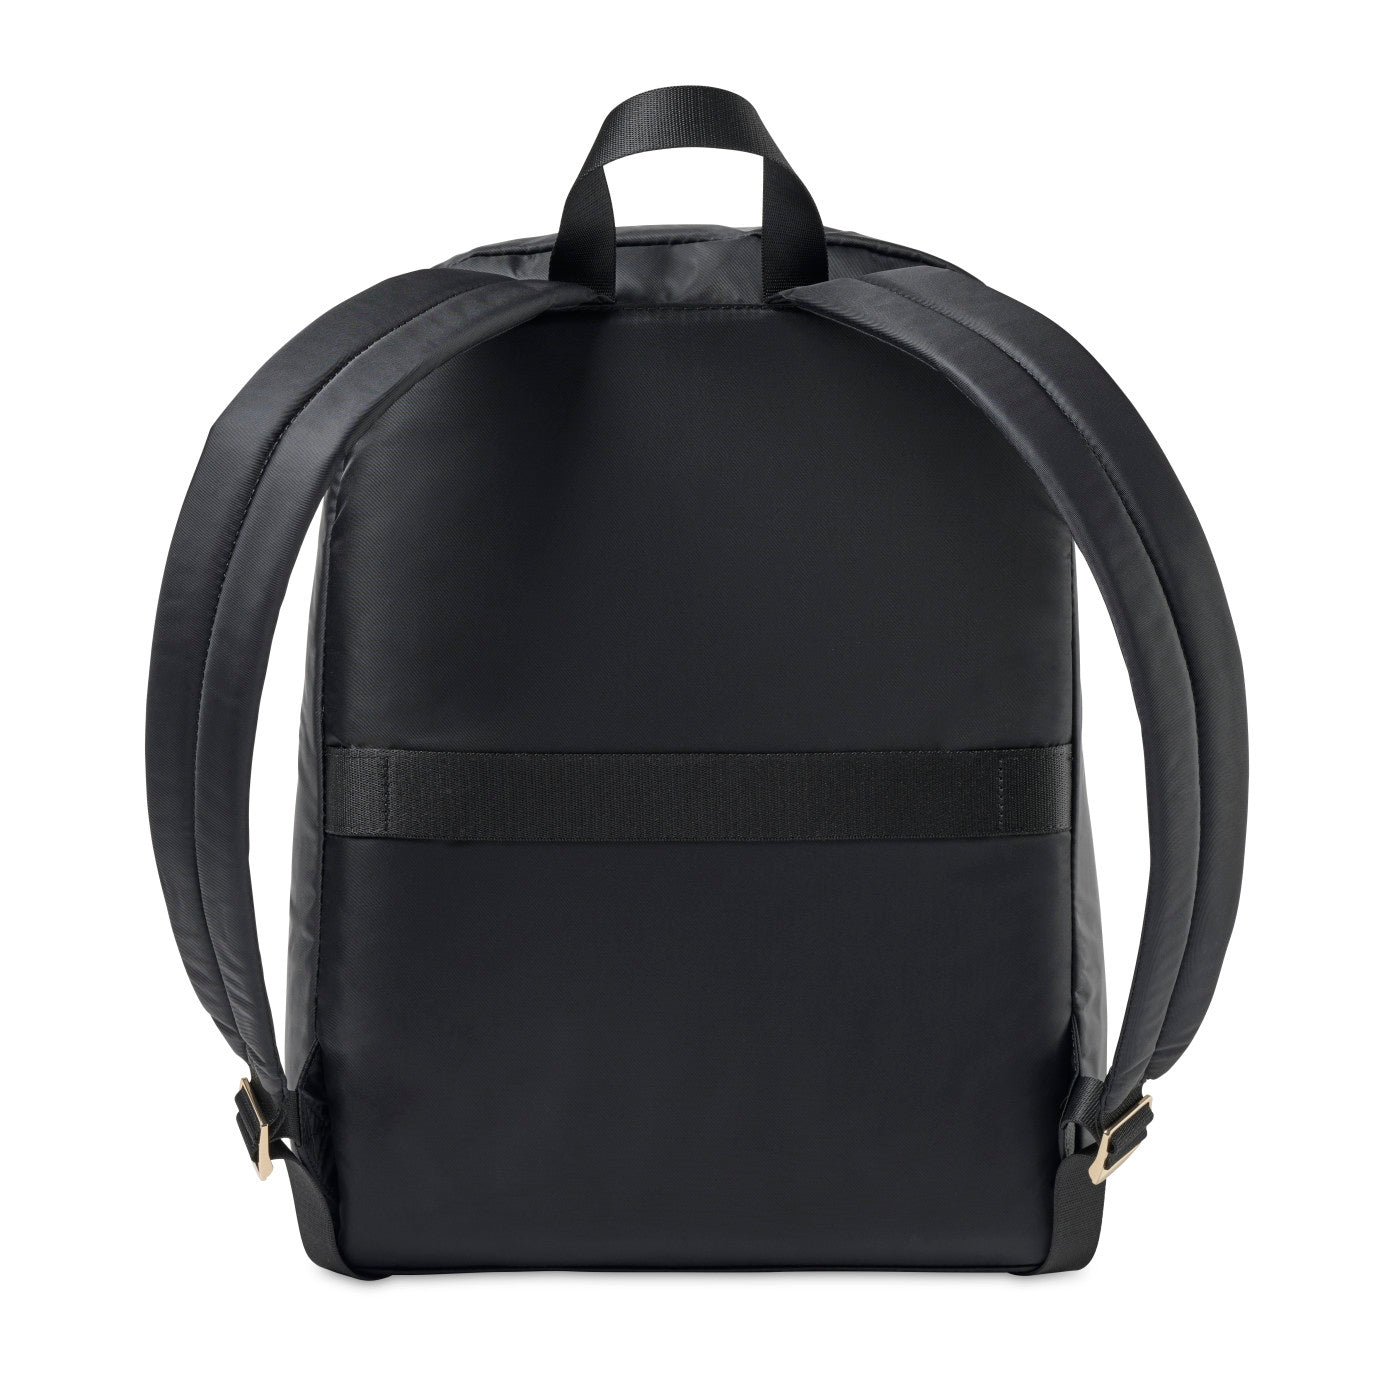 Explore Men's Leather Bags & Backpacks | Samsonite